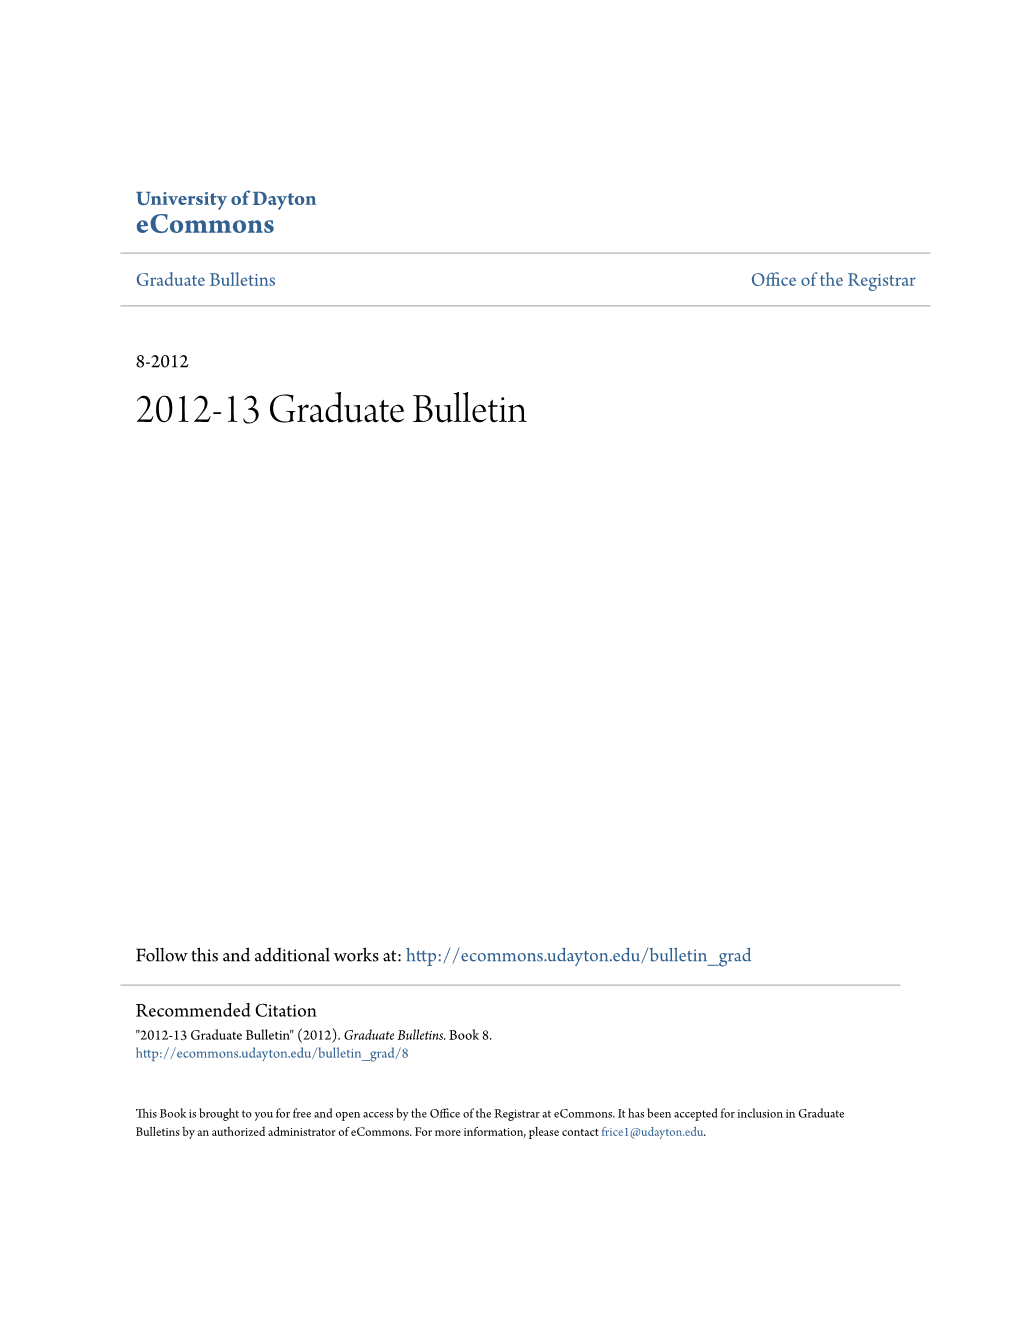 2012-13 Graduate Bulletin